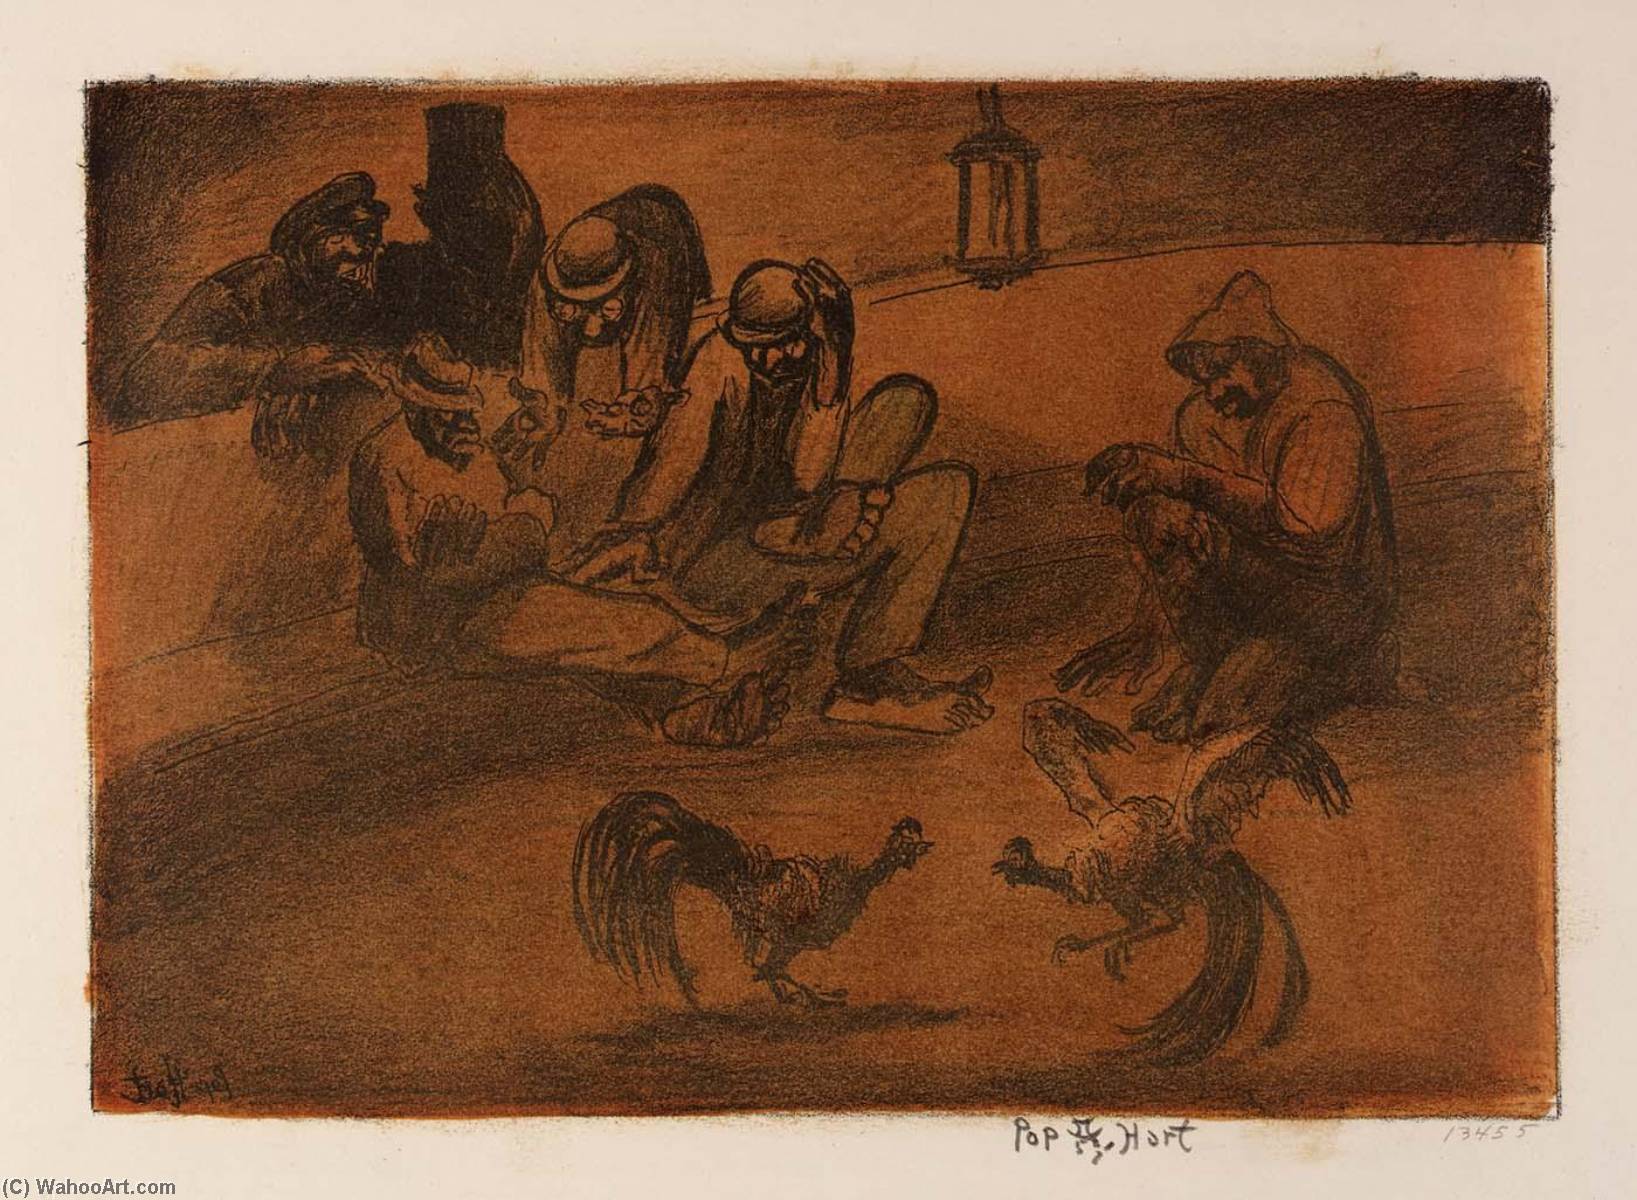 WikiOO.org - Encyclopedia of Fine Arts - Lukisan, Artwork George Overbury Pop Hart - The Gamblers